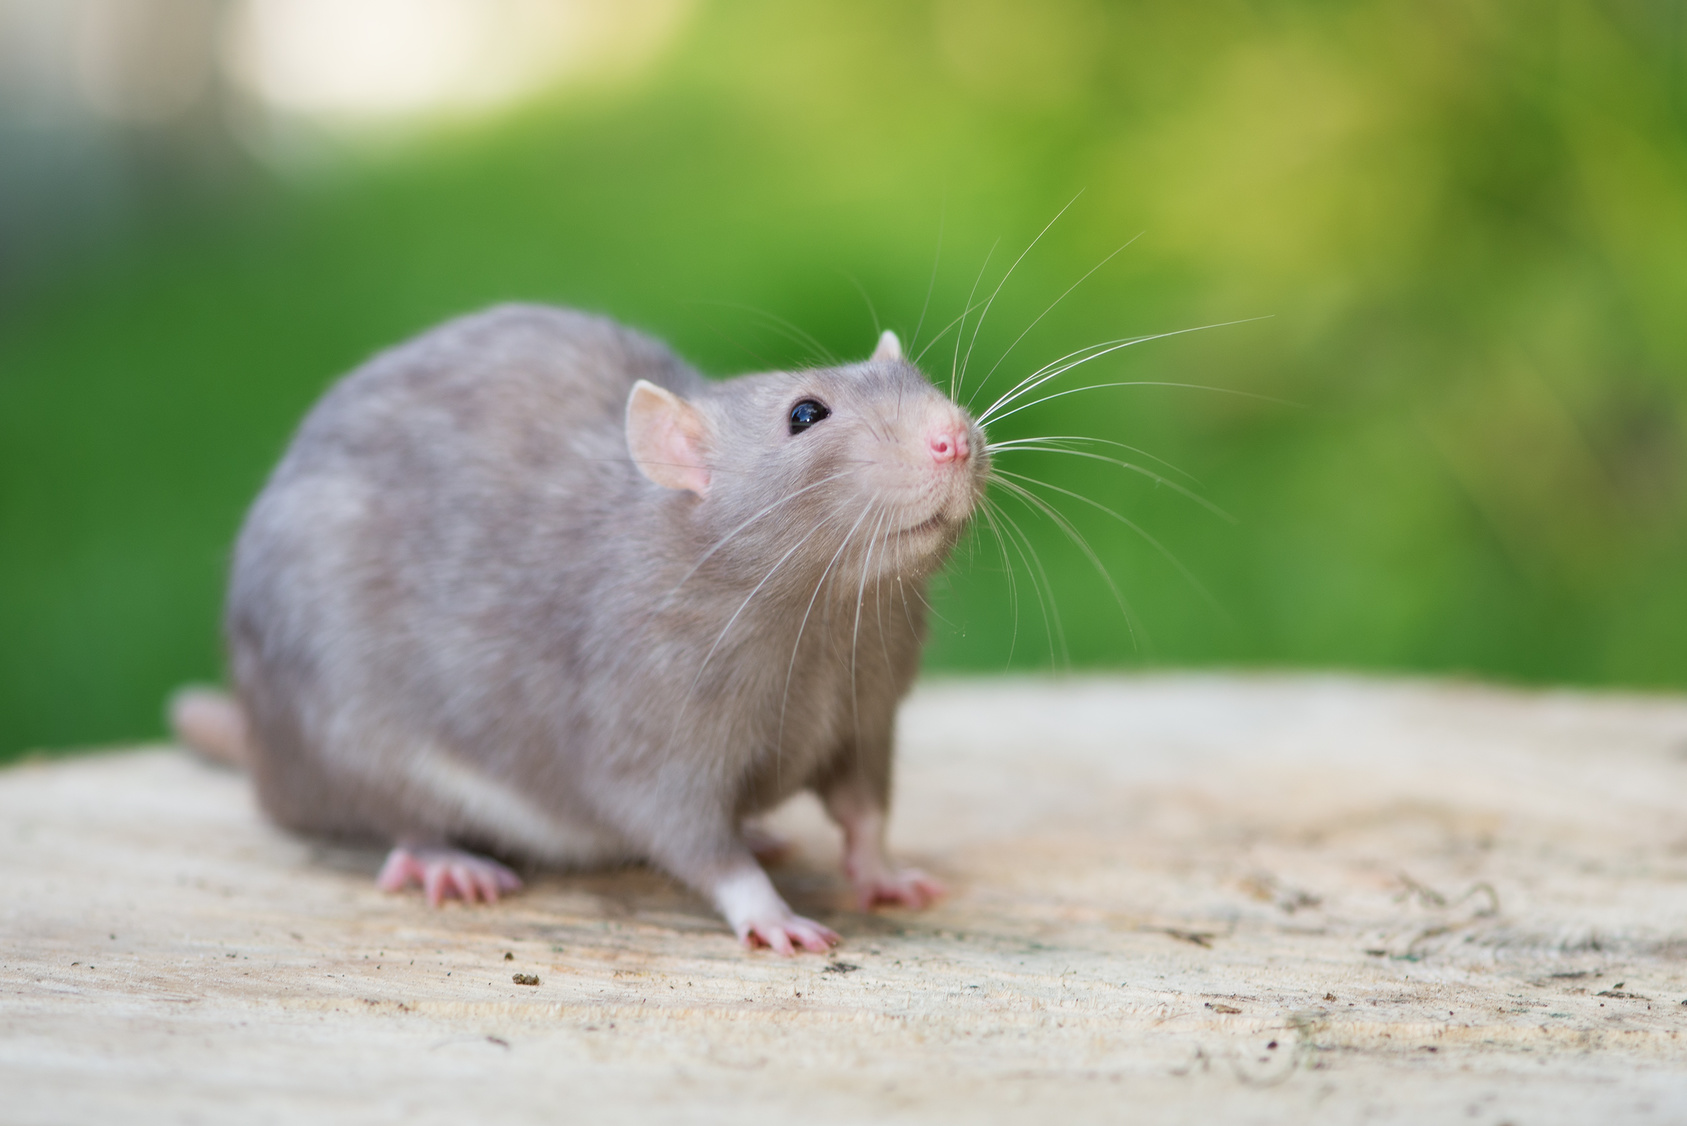 Comment bien utiliser une tapette à souris ou à rats ? Notre guide